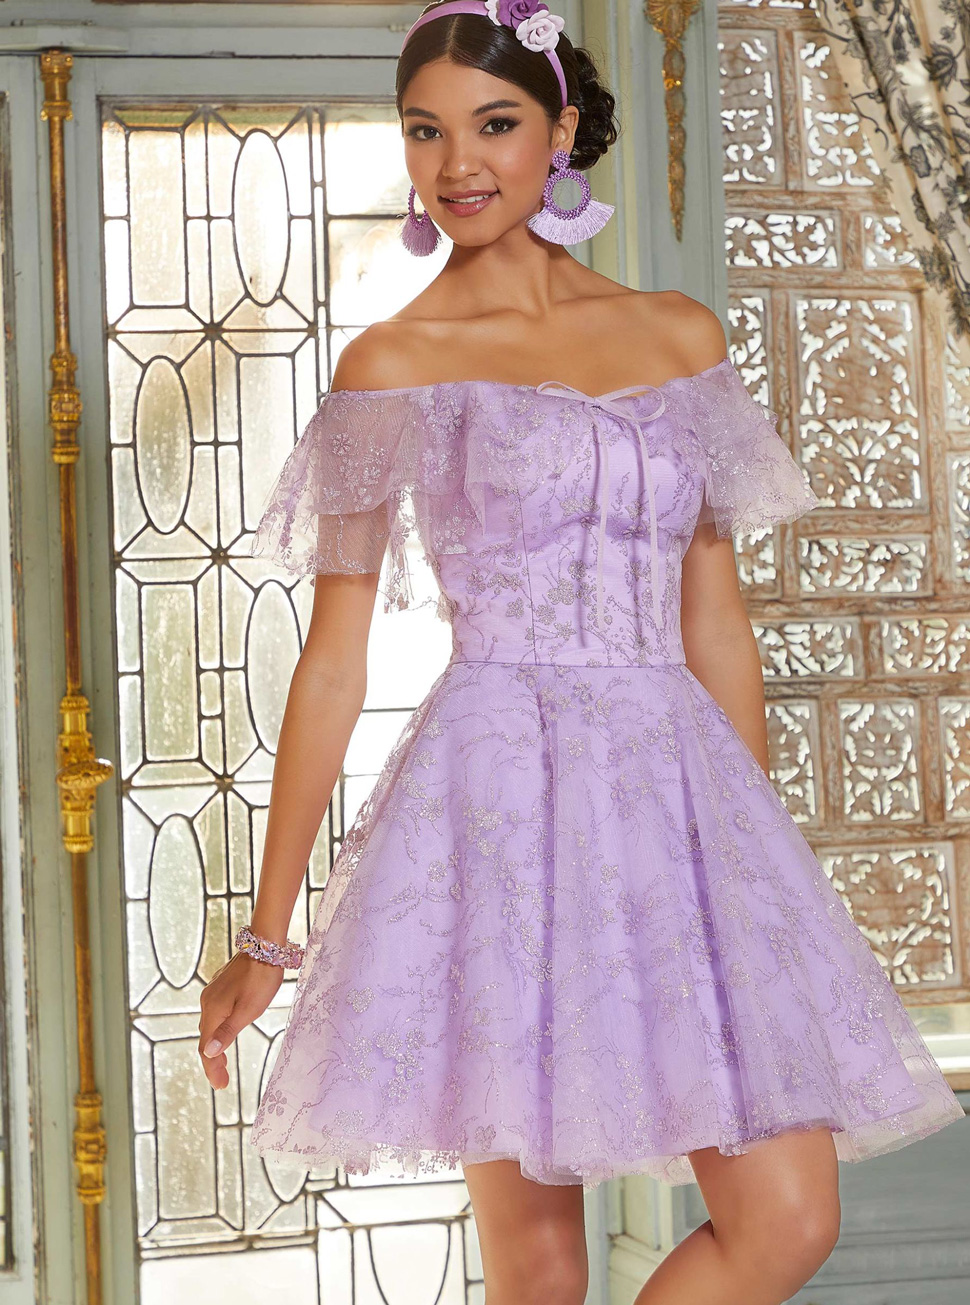 紫色小礼服欧式风格公主型高腰一字领短款礼服LIFU2097